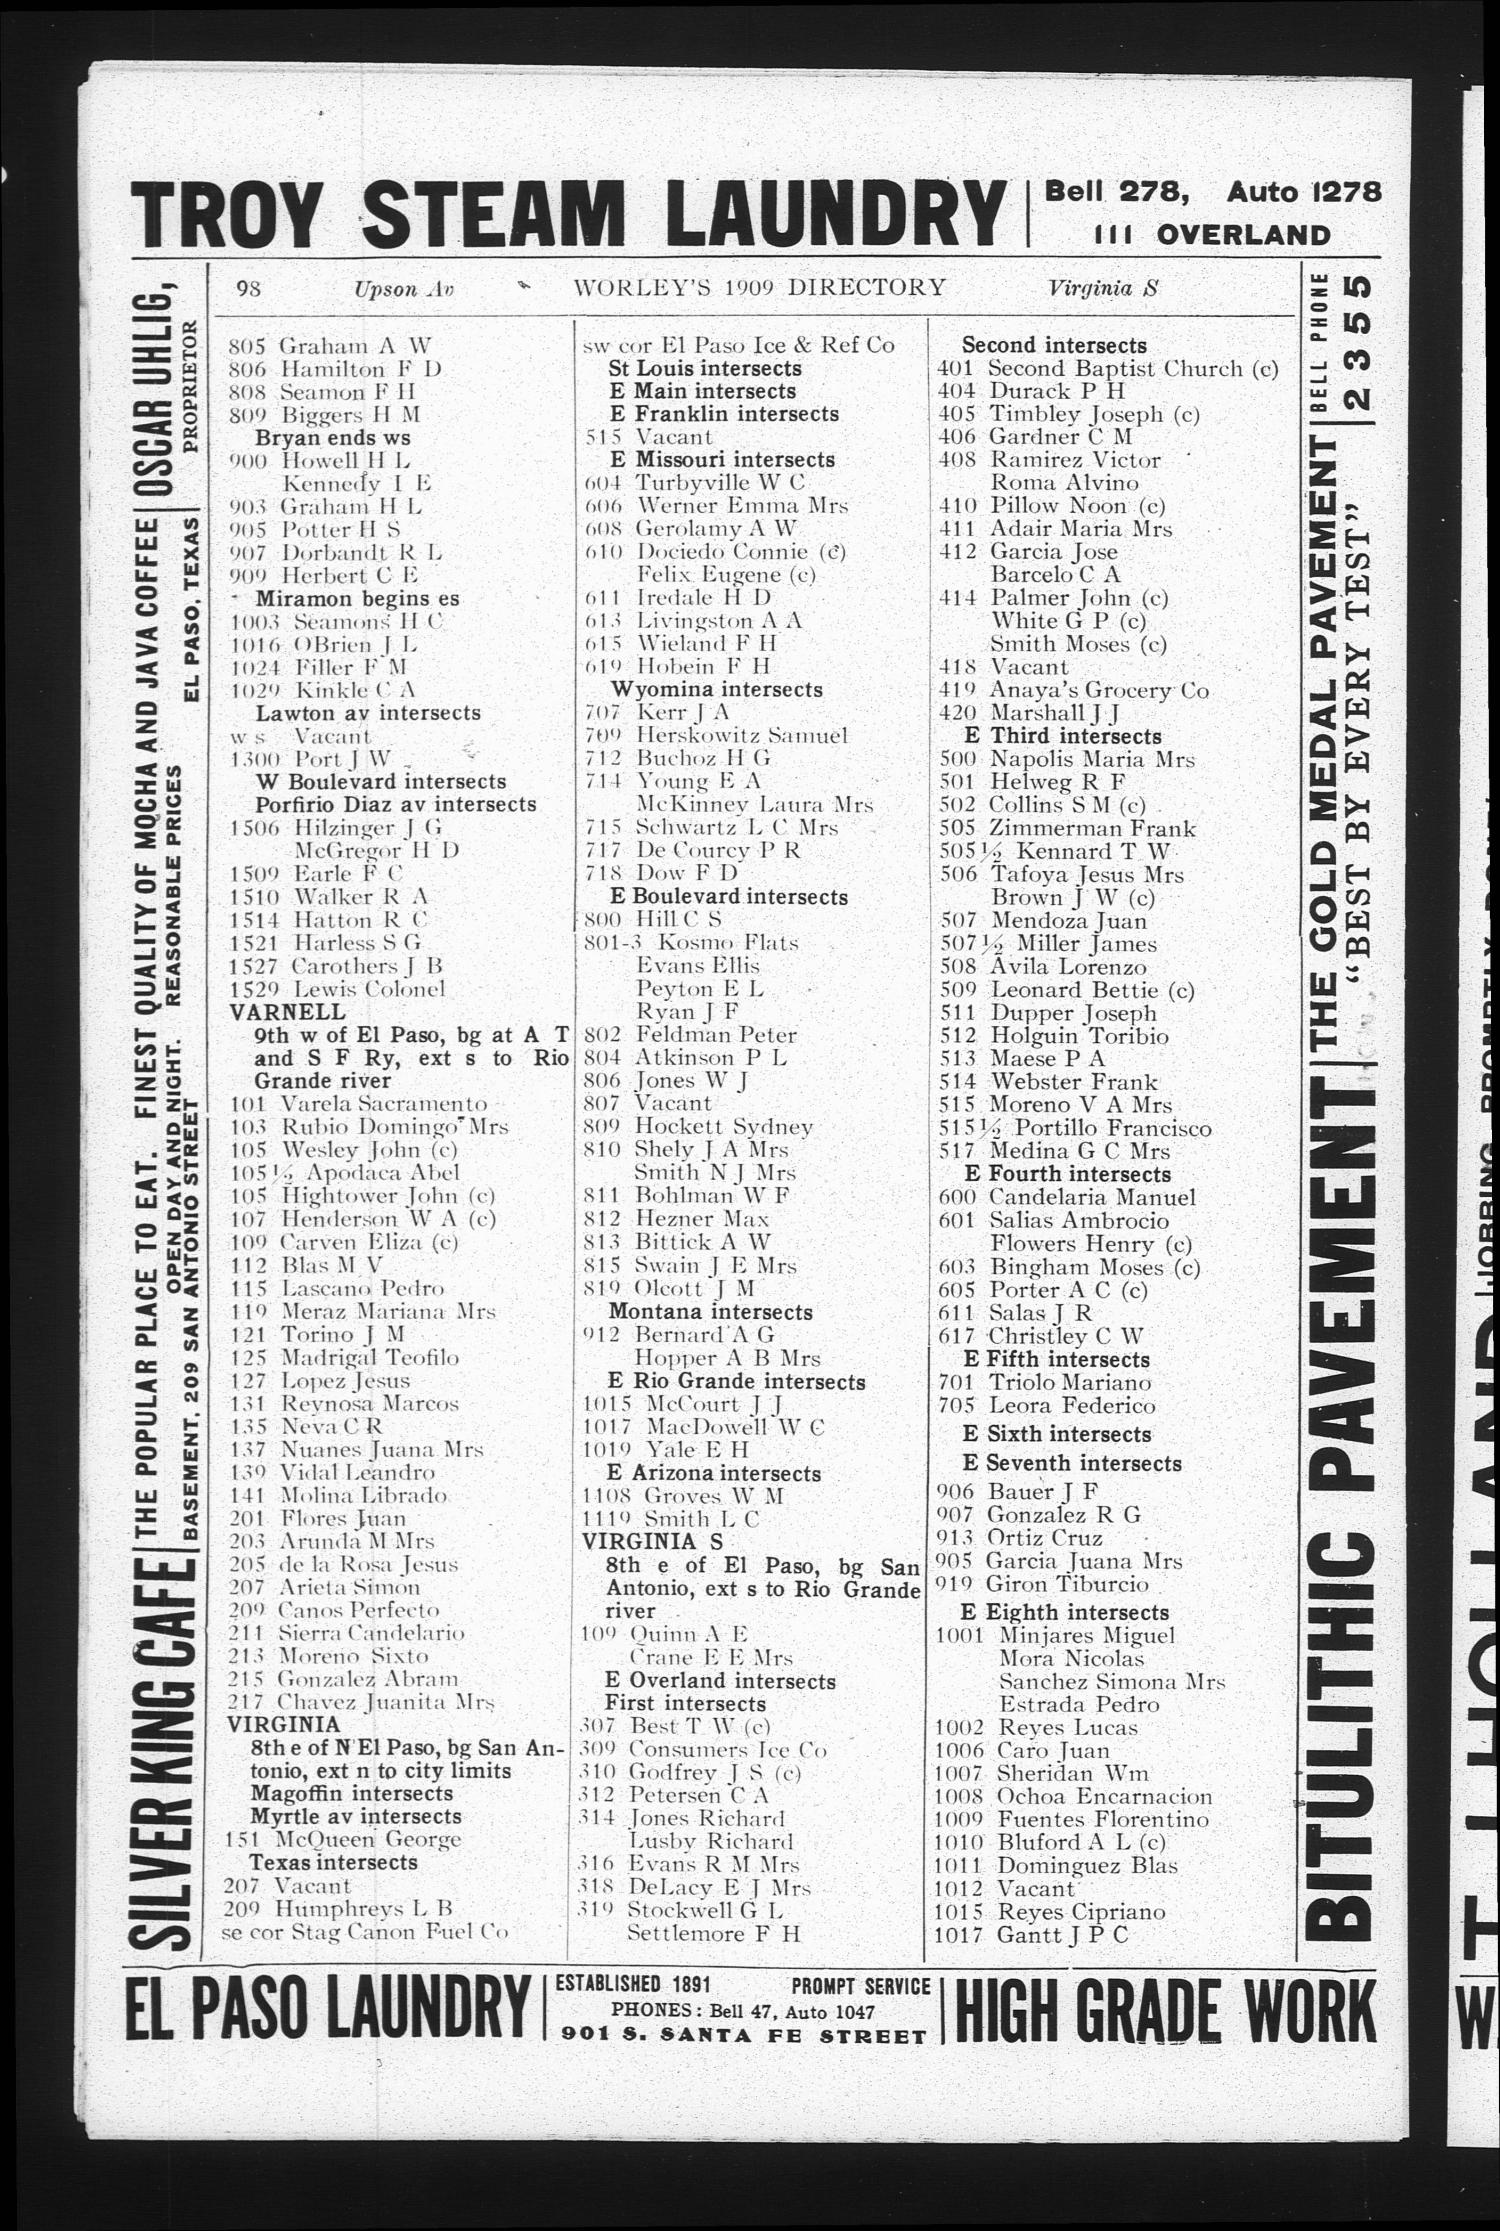 Worley's Directory of El Paso, Texas, 1909
                                                
                                                    98
                                                